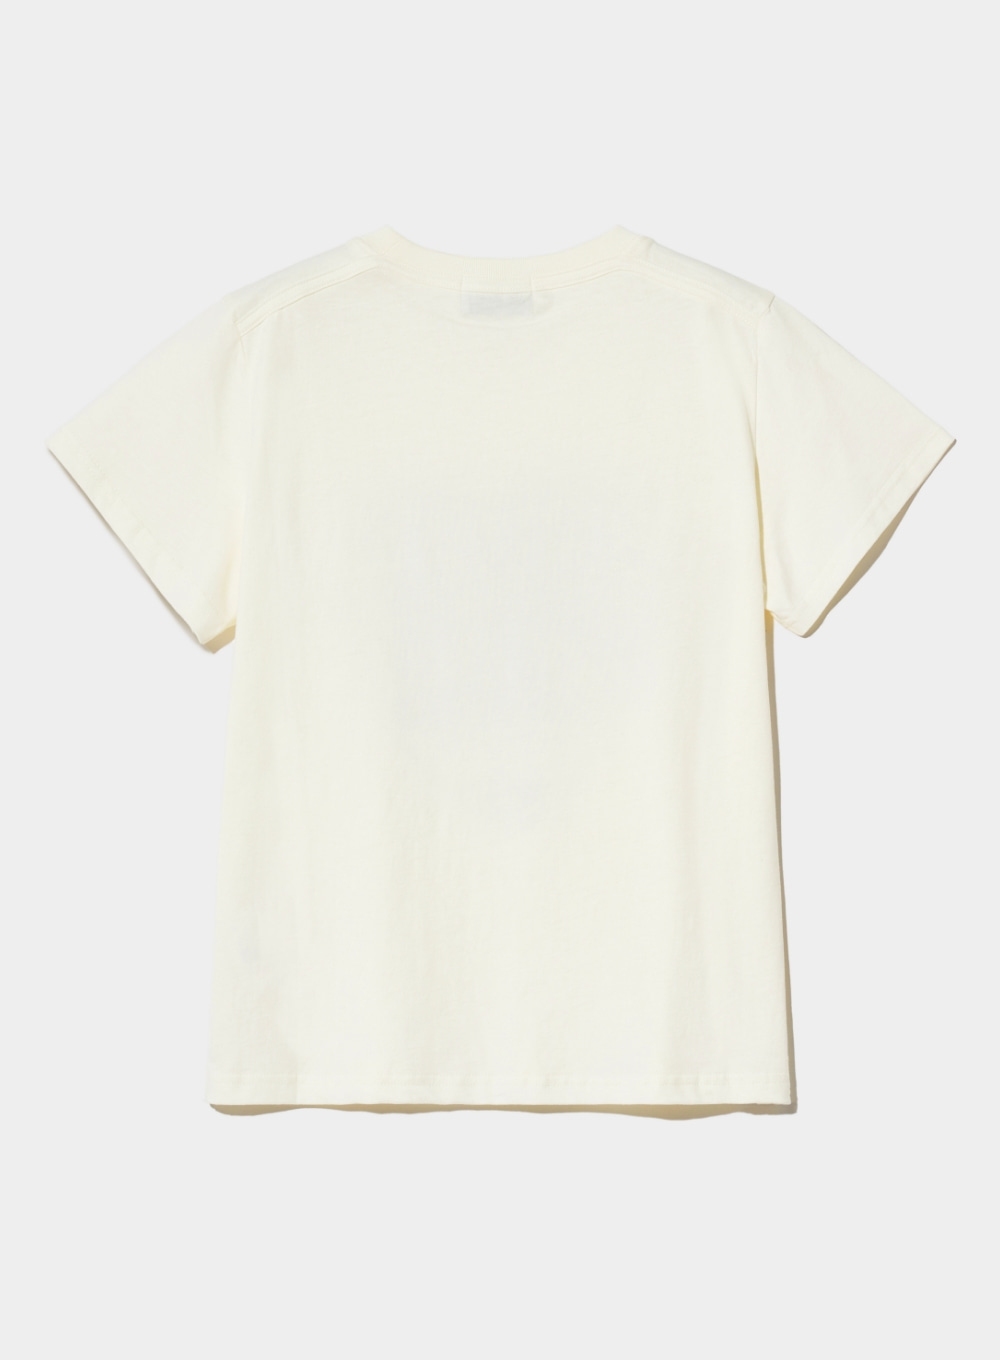 [5,000원 쿠폰] (W) Saturday Retro Mood Graphic T-Shirts - Vintage White